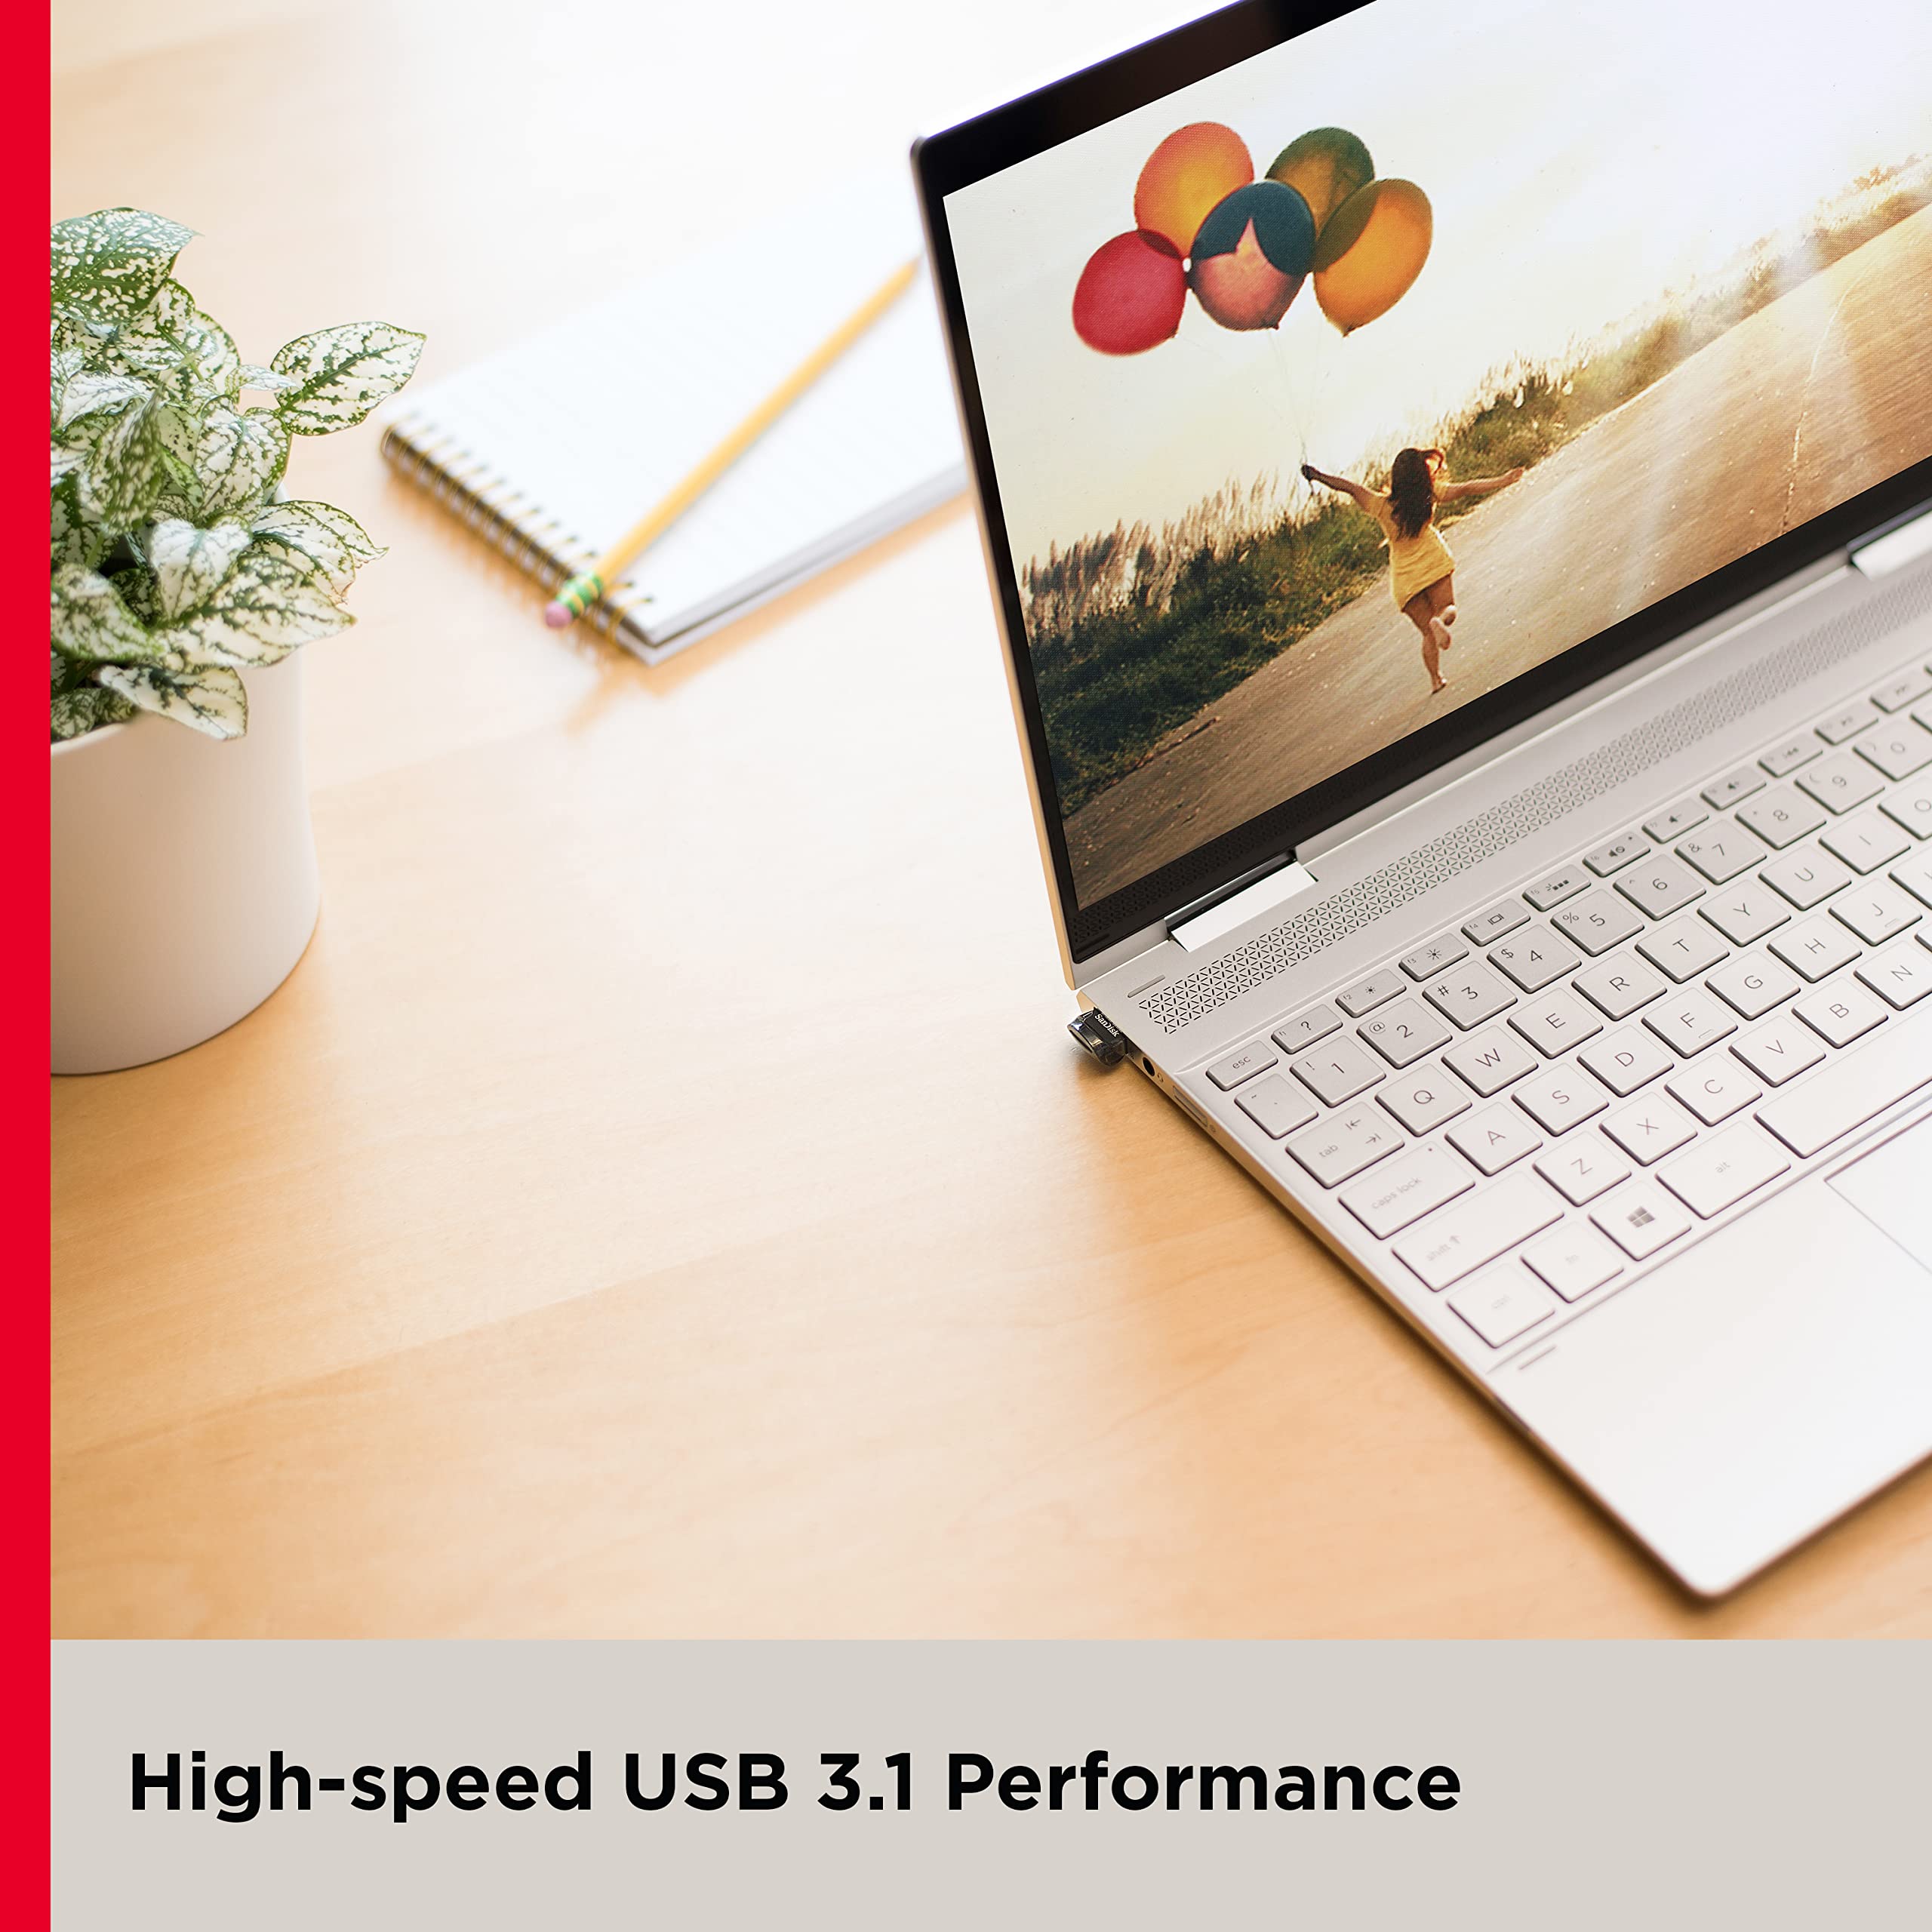 SanDisk 32GB 3-Pack Ultra Fit USB 3.1 Flash Drive (3x32GB) - SDCZ430-032G-G46T, Black